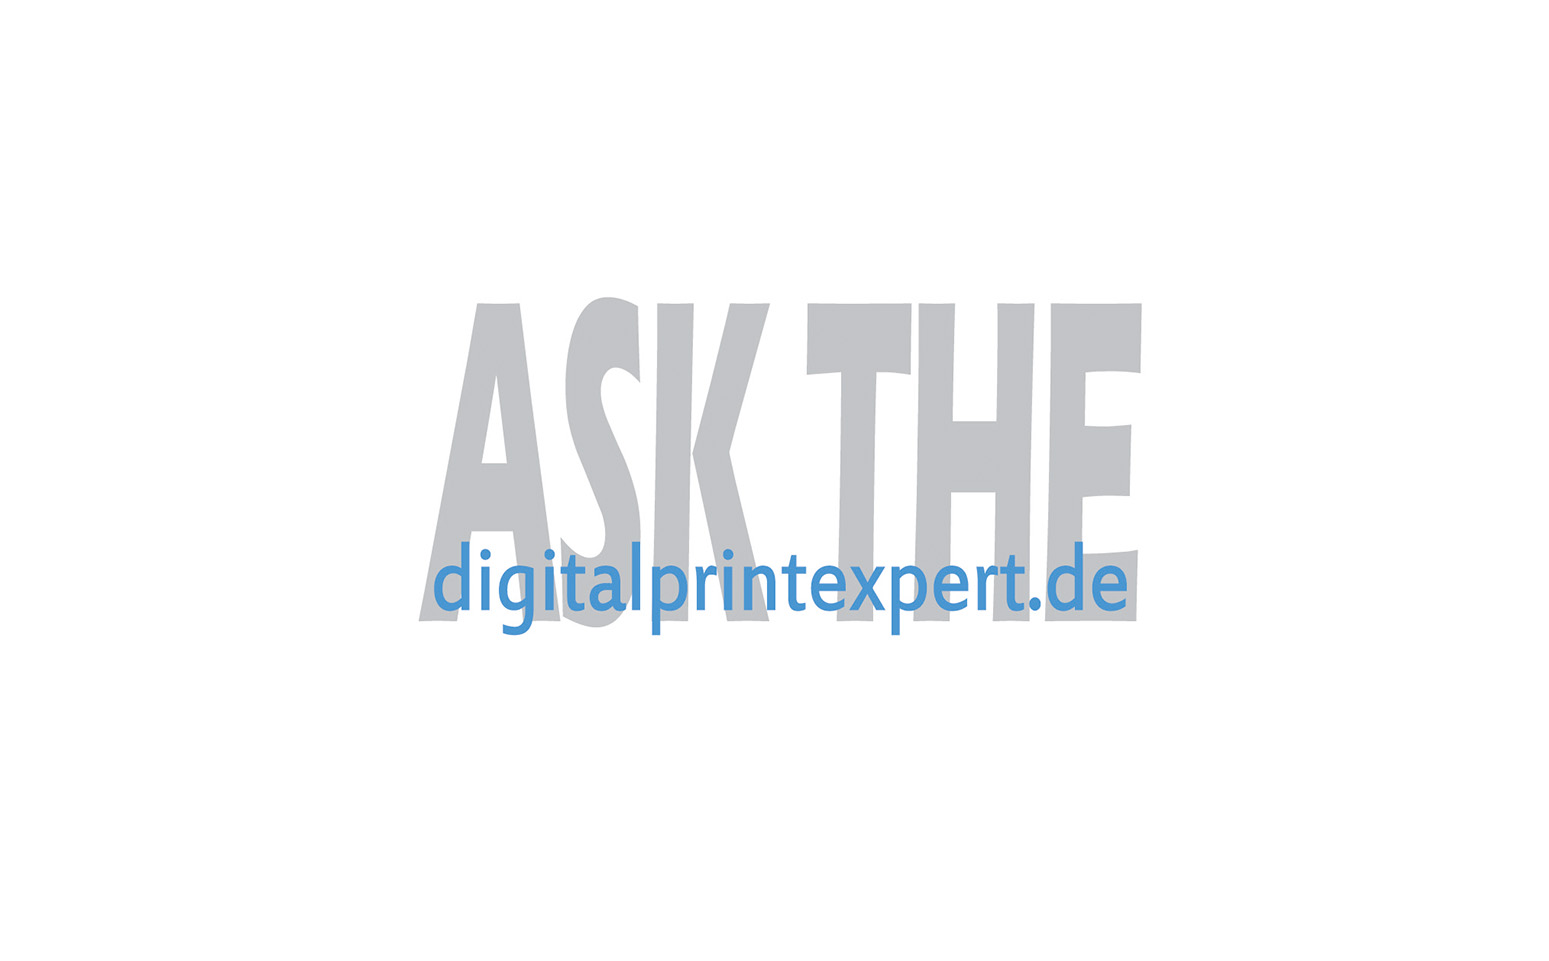 Ask the digitalprintexpert.de